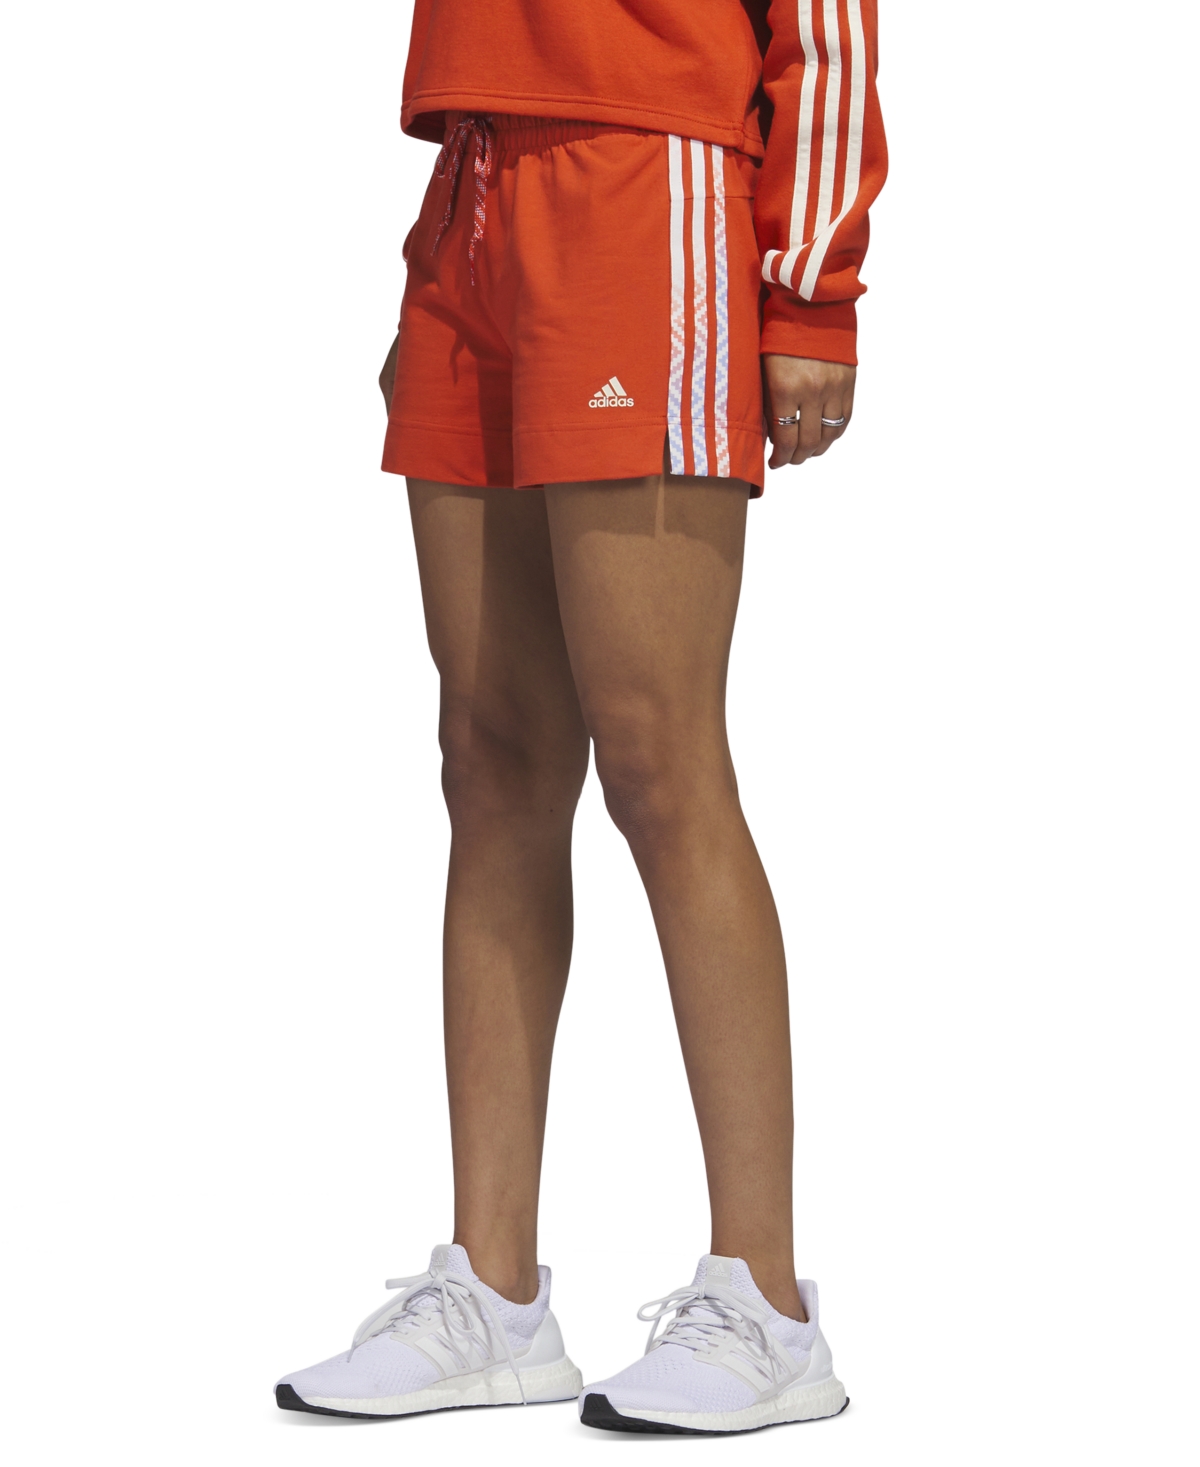 Adidas Originals Women's Sport Woven 3-stripe Shorts In Red Orange